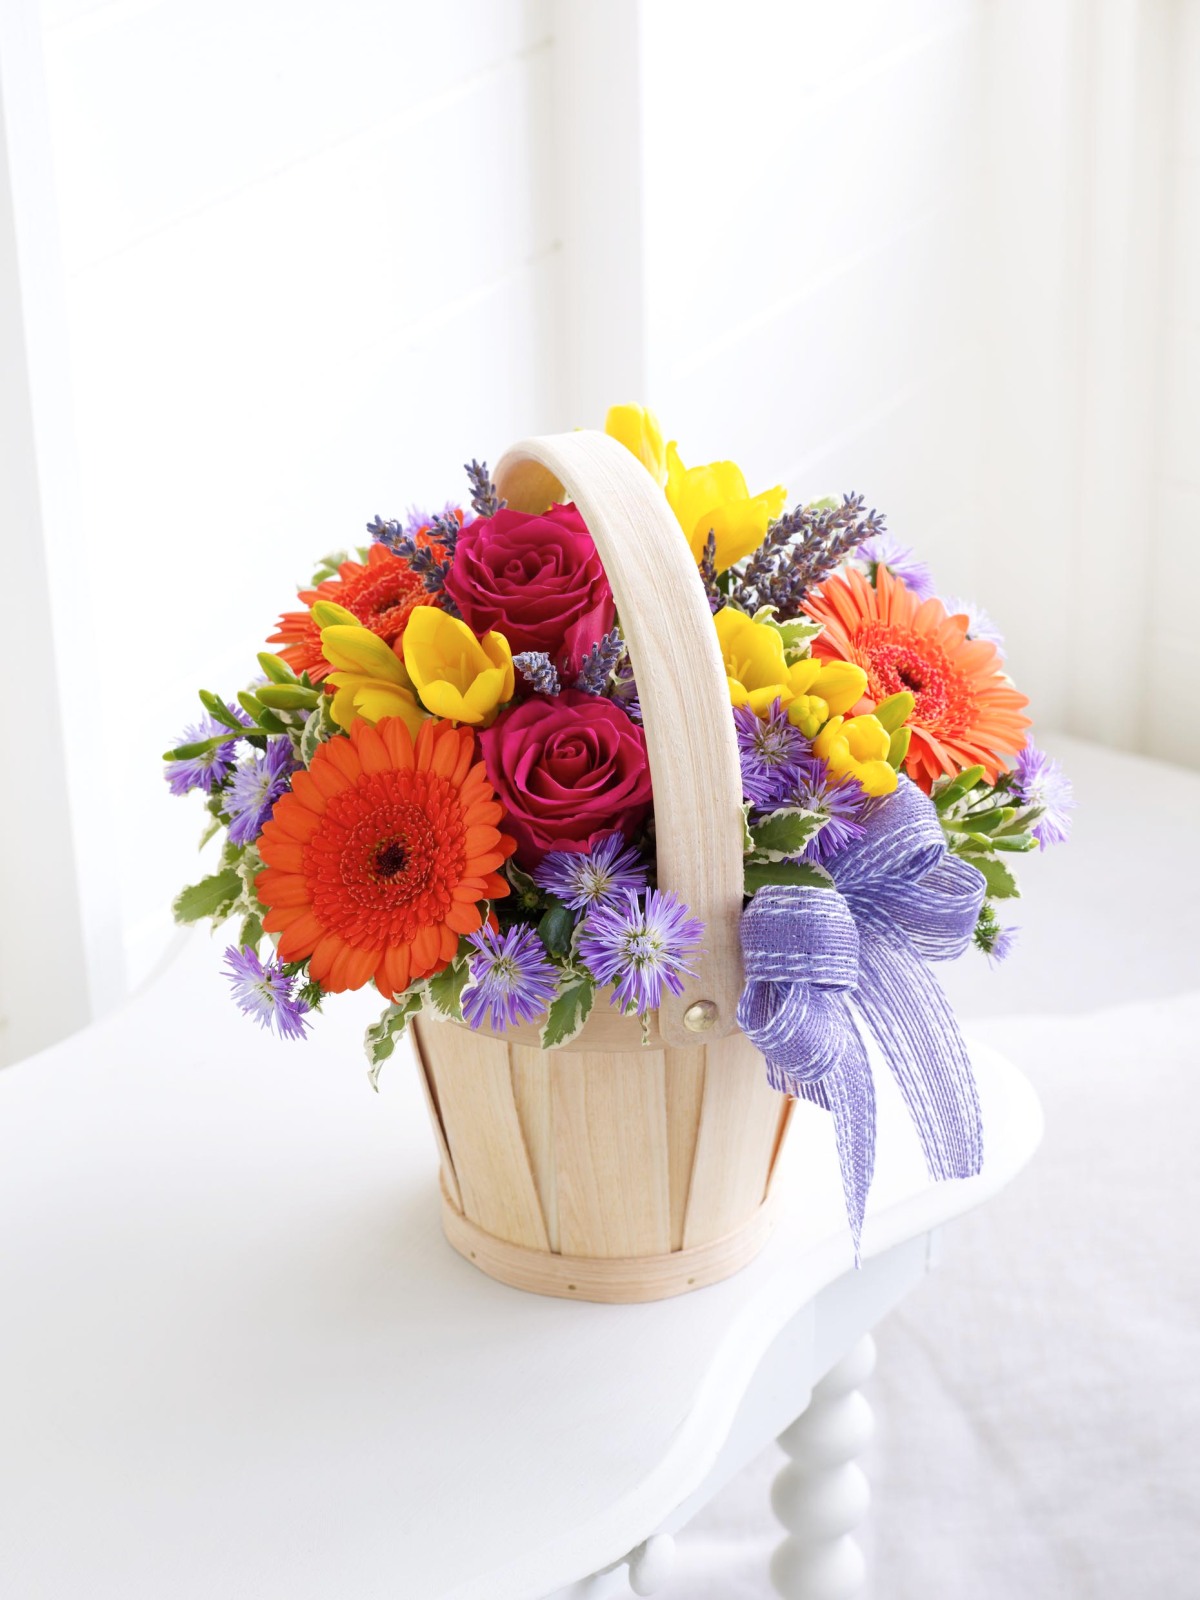 Petite summer flowers basket